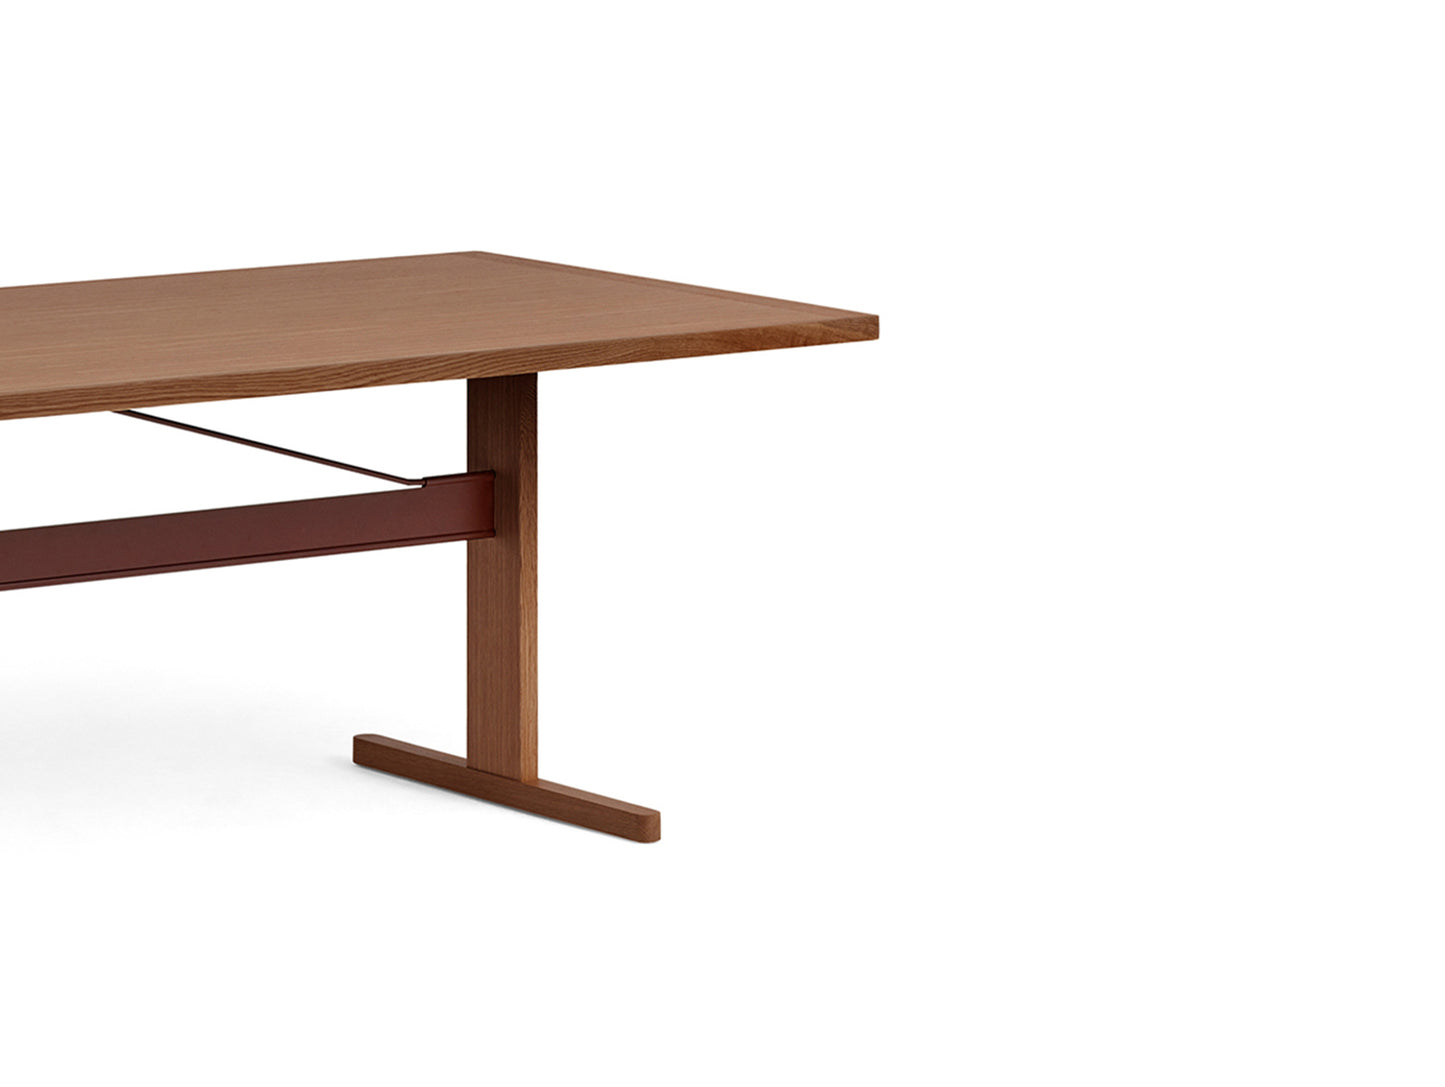 Passerelle 테이블 (목재 테이블 상판)